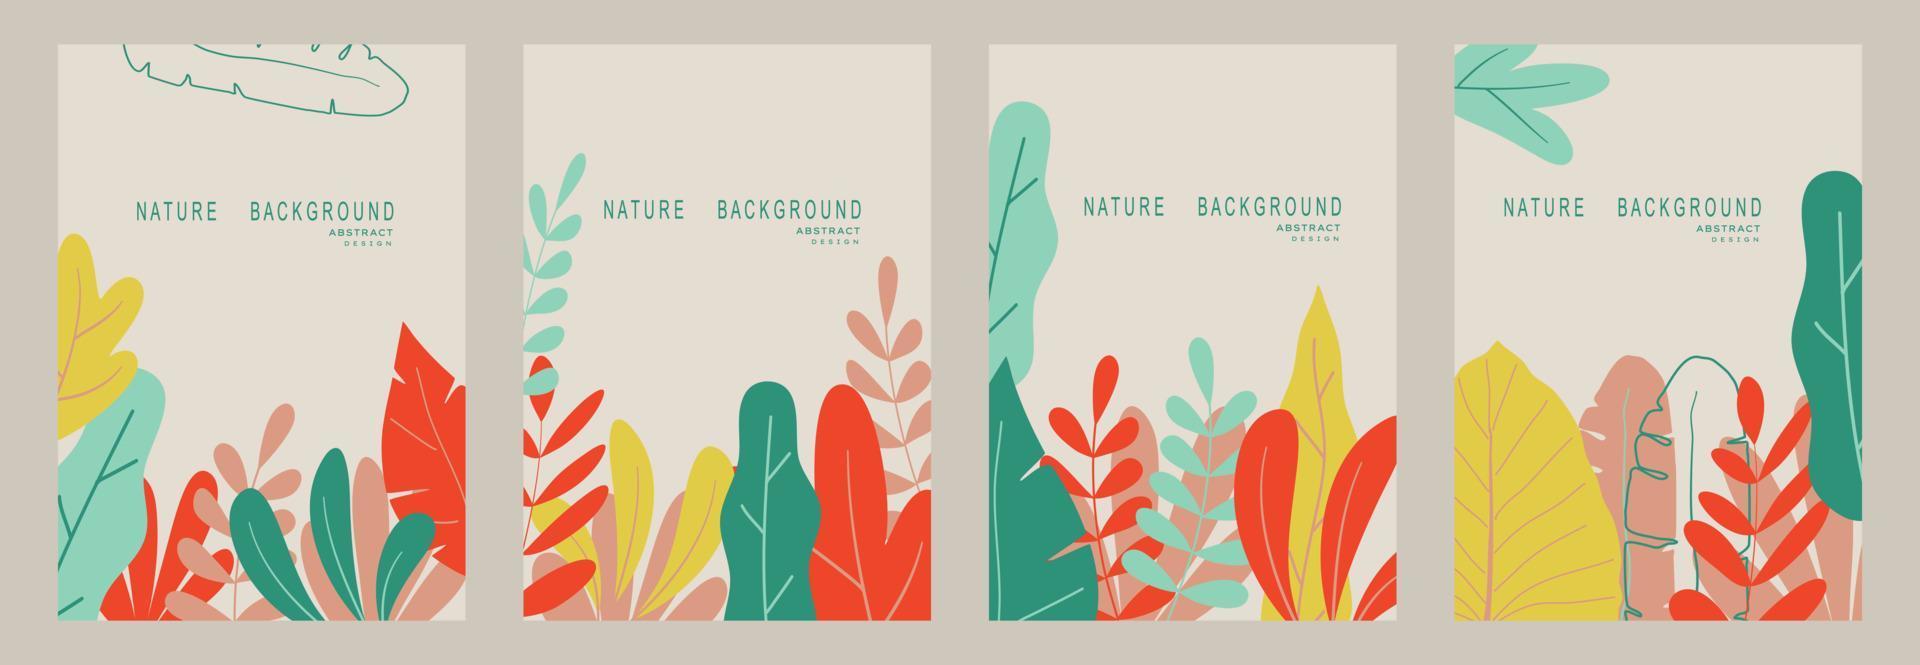 fond de nature abstraite avec des feuilles et des plantes. copier l'espace pour le texte. illustration vectorielle vecteur